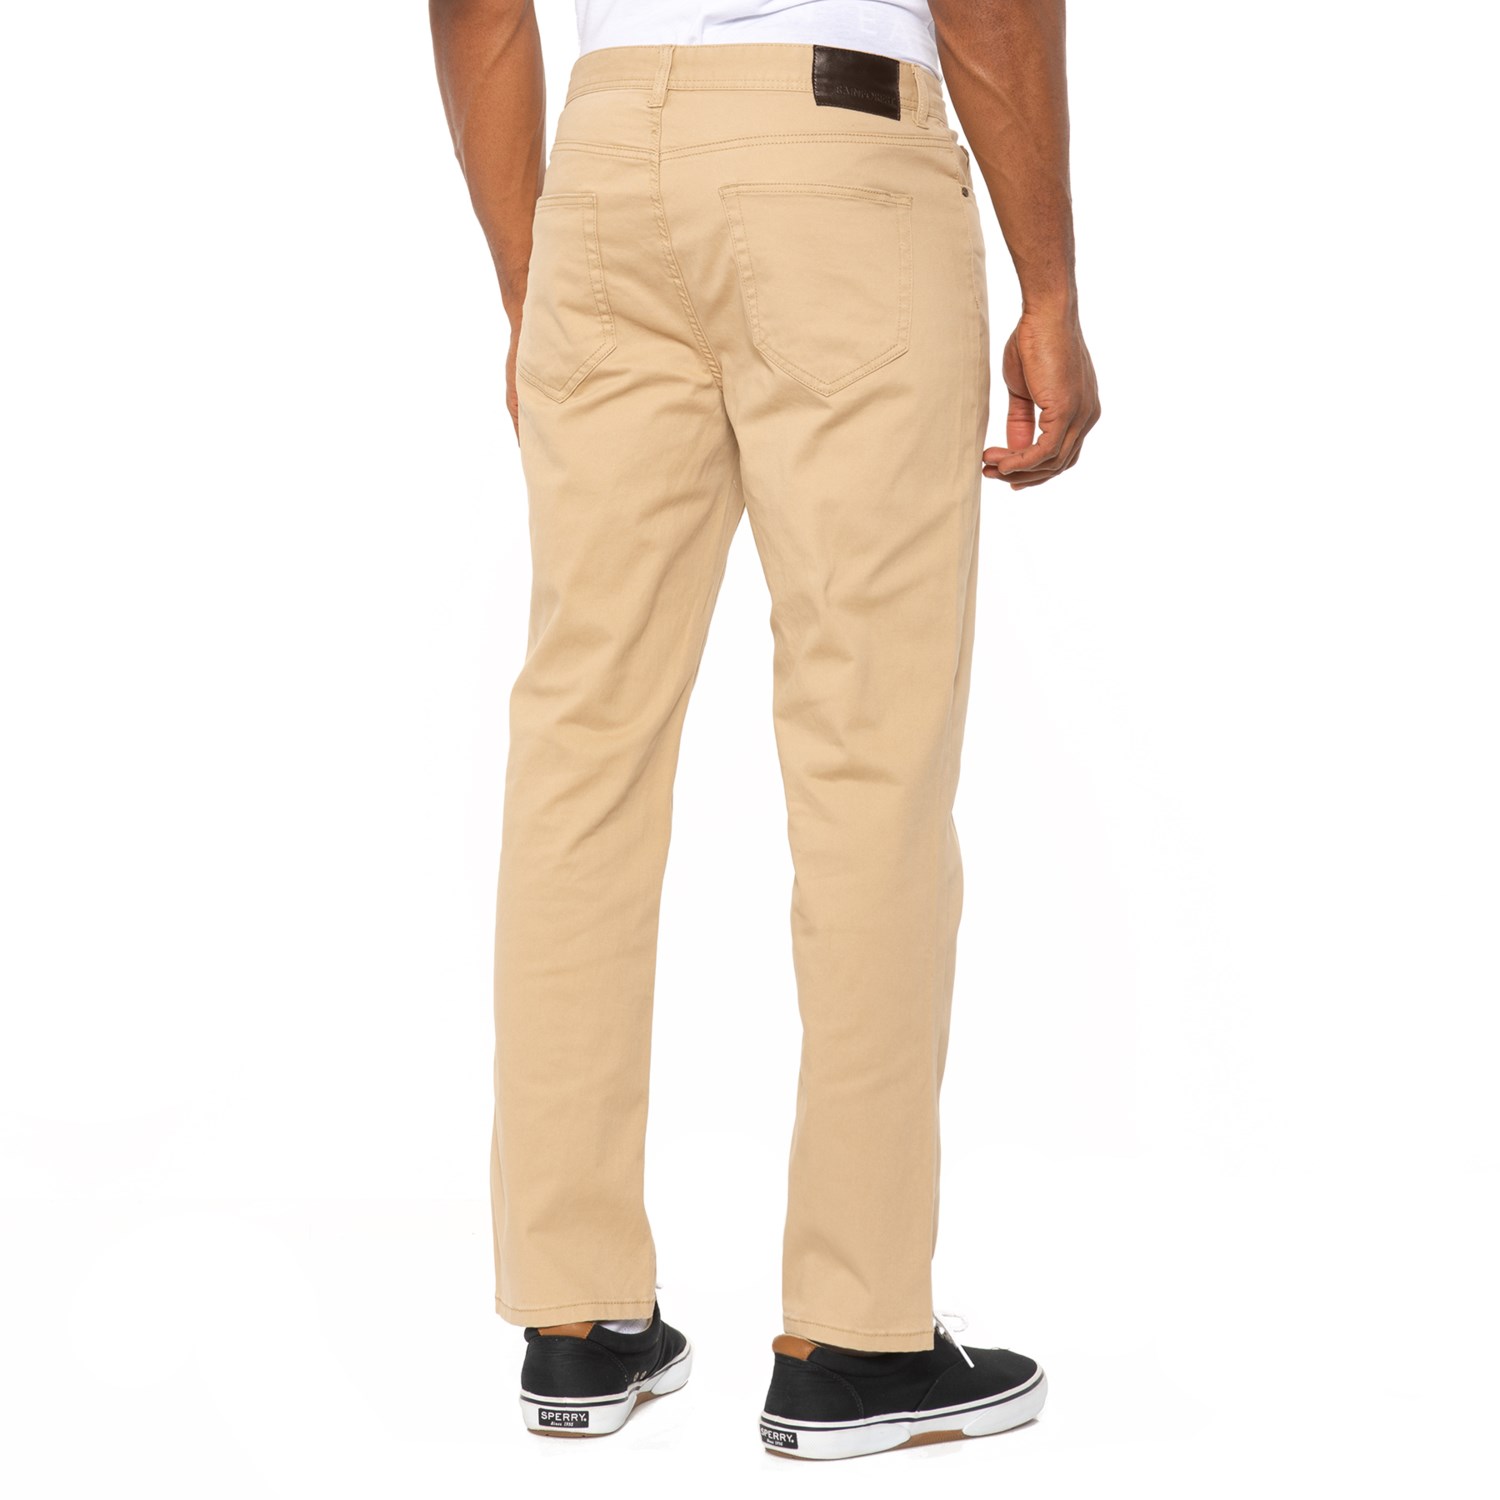 Rainforest Garment-Washed Five-Pocket Pants (For Men) - Save 50%